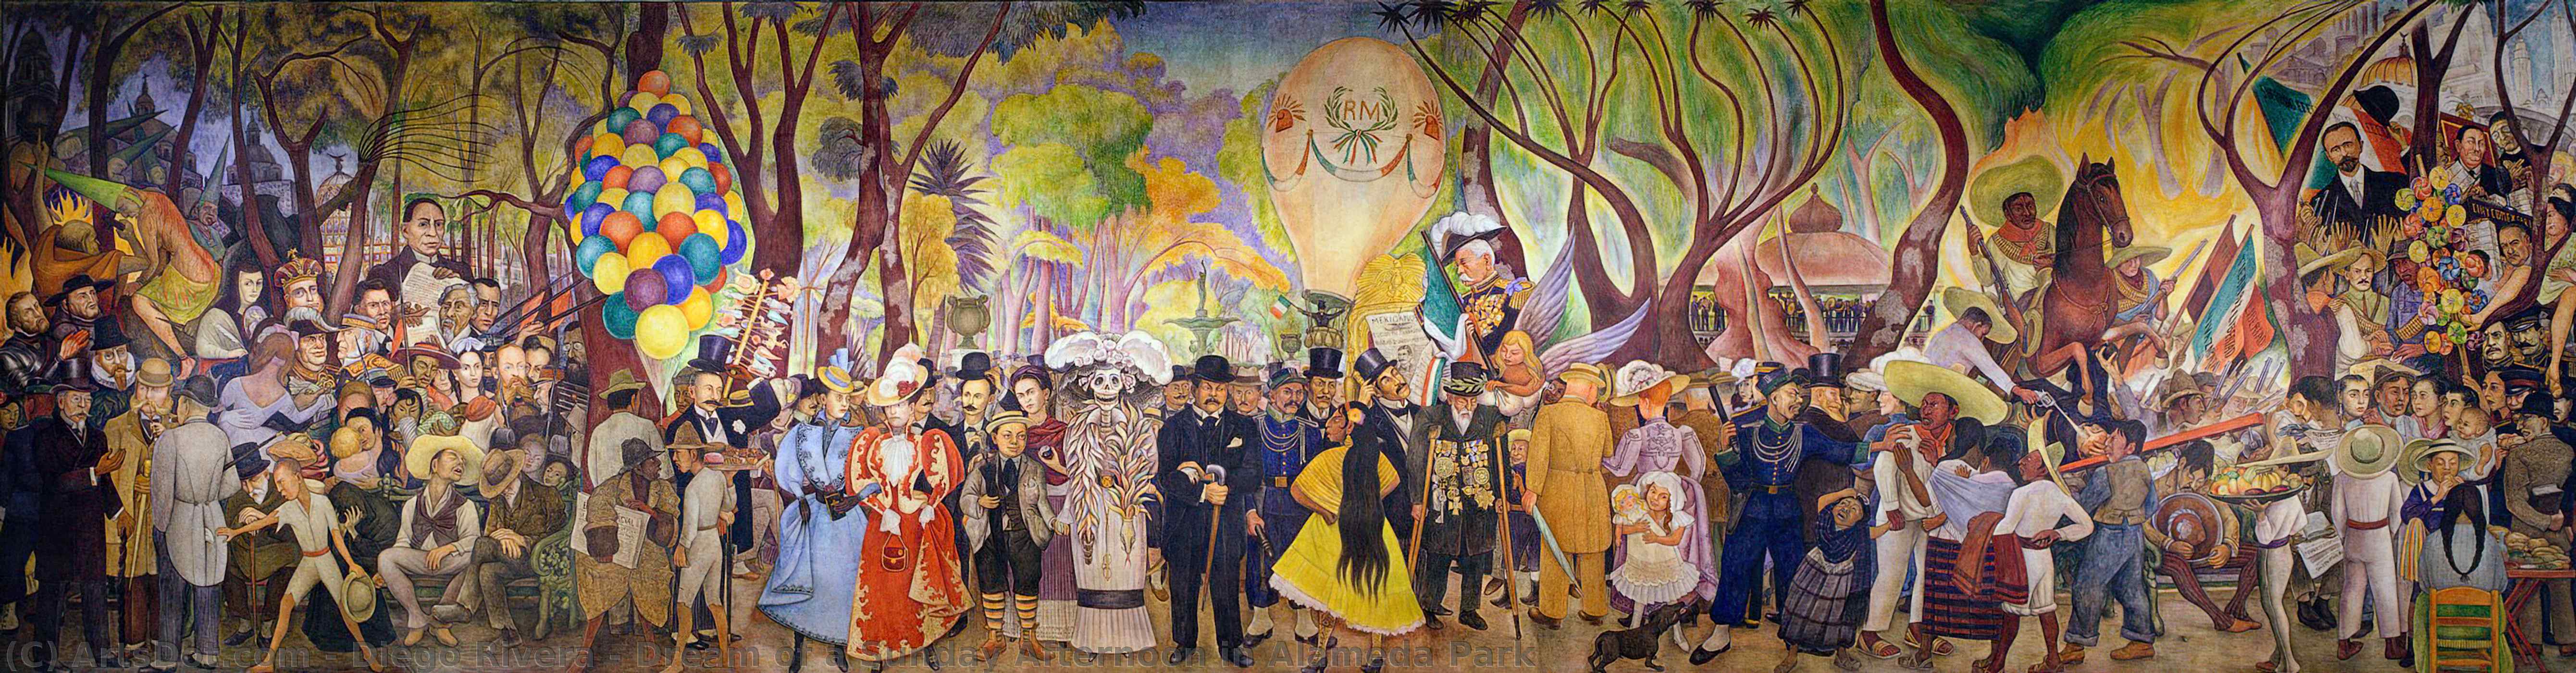 WikiOO.org - Энциклопедия изобразительного искусства - Живопись, Картины  Diego Rivera - мечта воскресного дня в парке аламеда